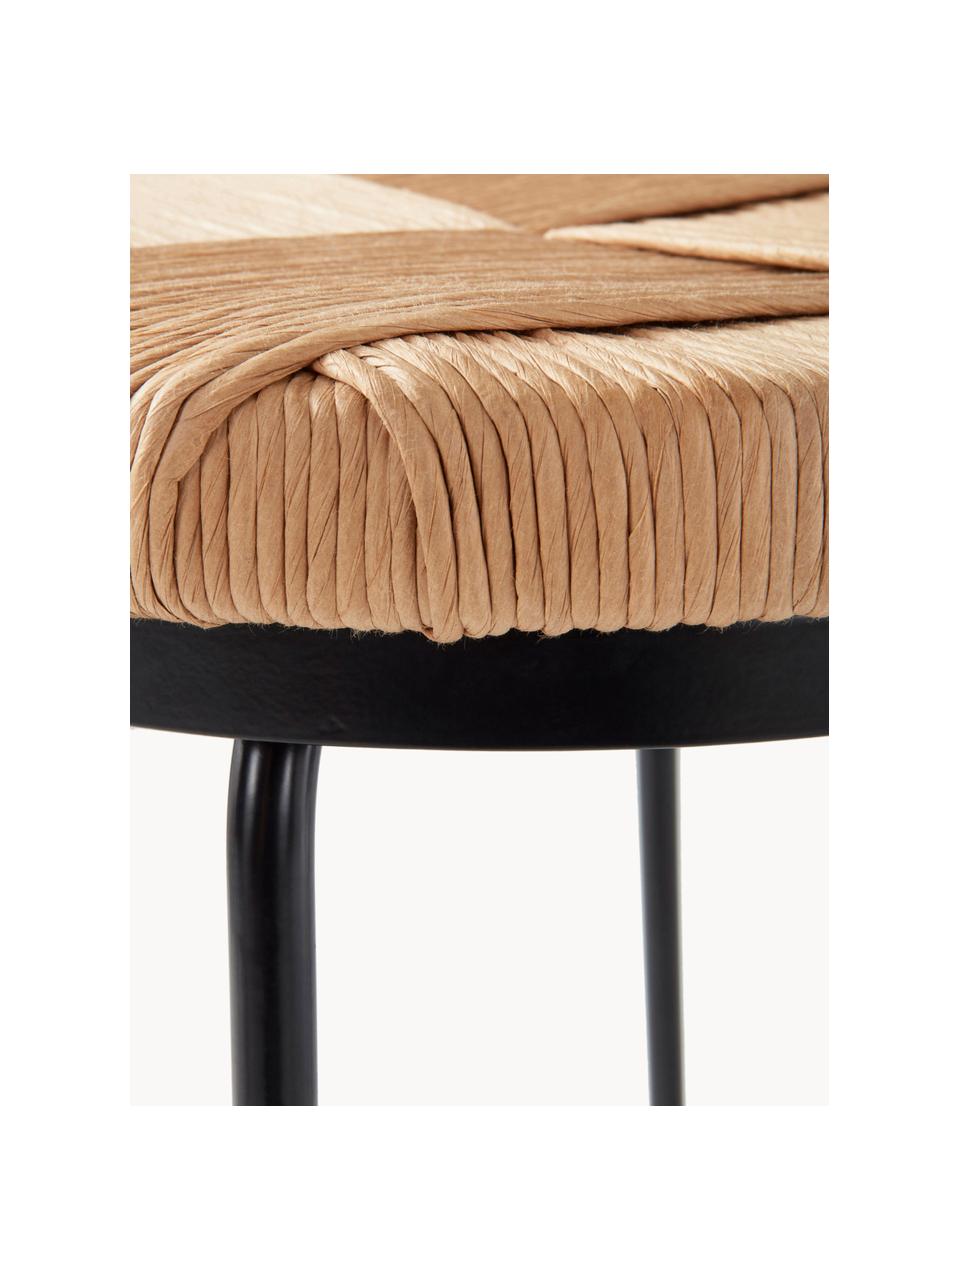 Barová židle Marino, Březové dřevo, černá, Ø 38 cm, V 76 cm